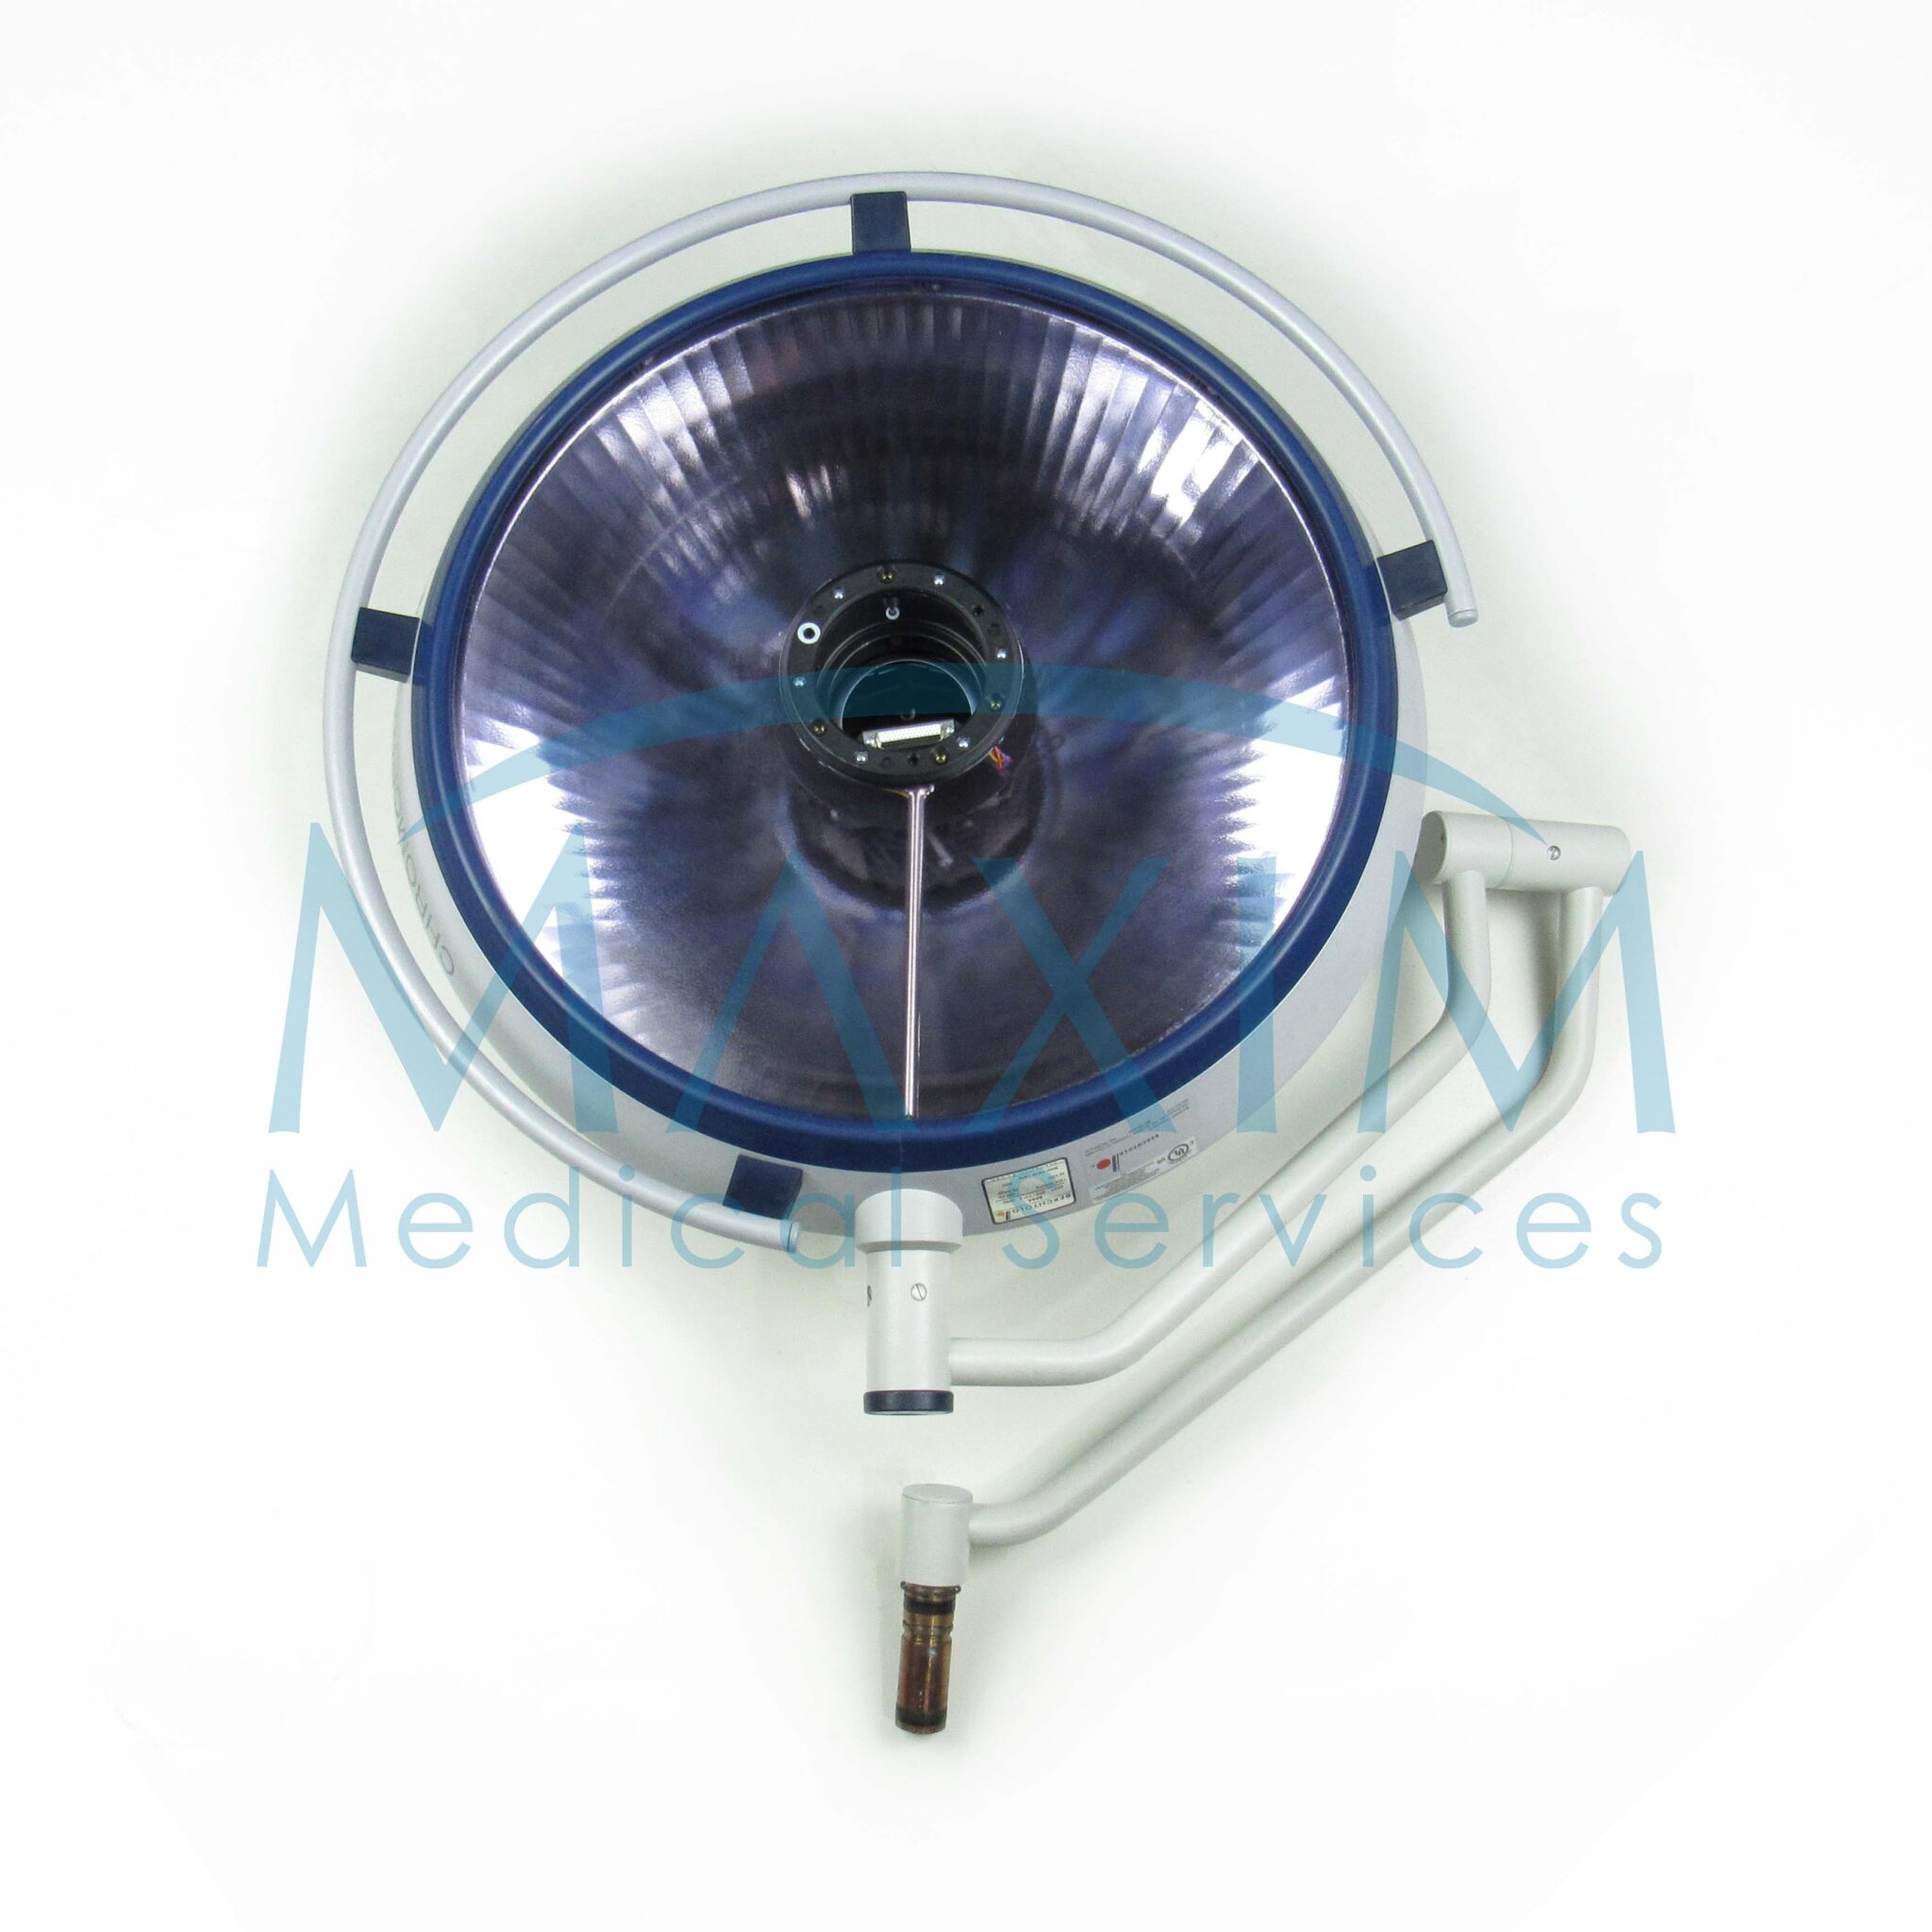 Berchtold Chromophare E655 7-Pole Camera Ready Light Head